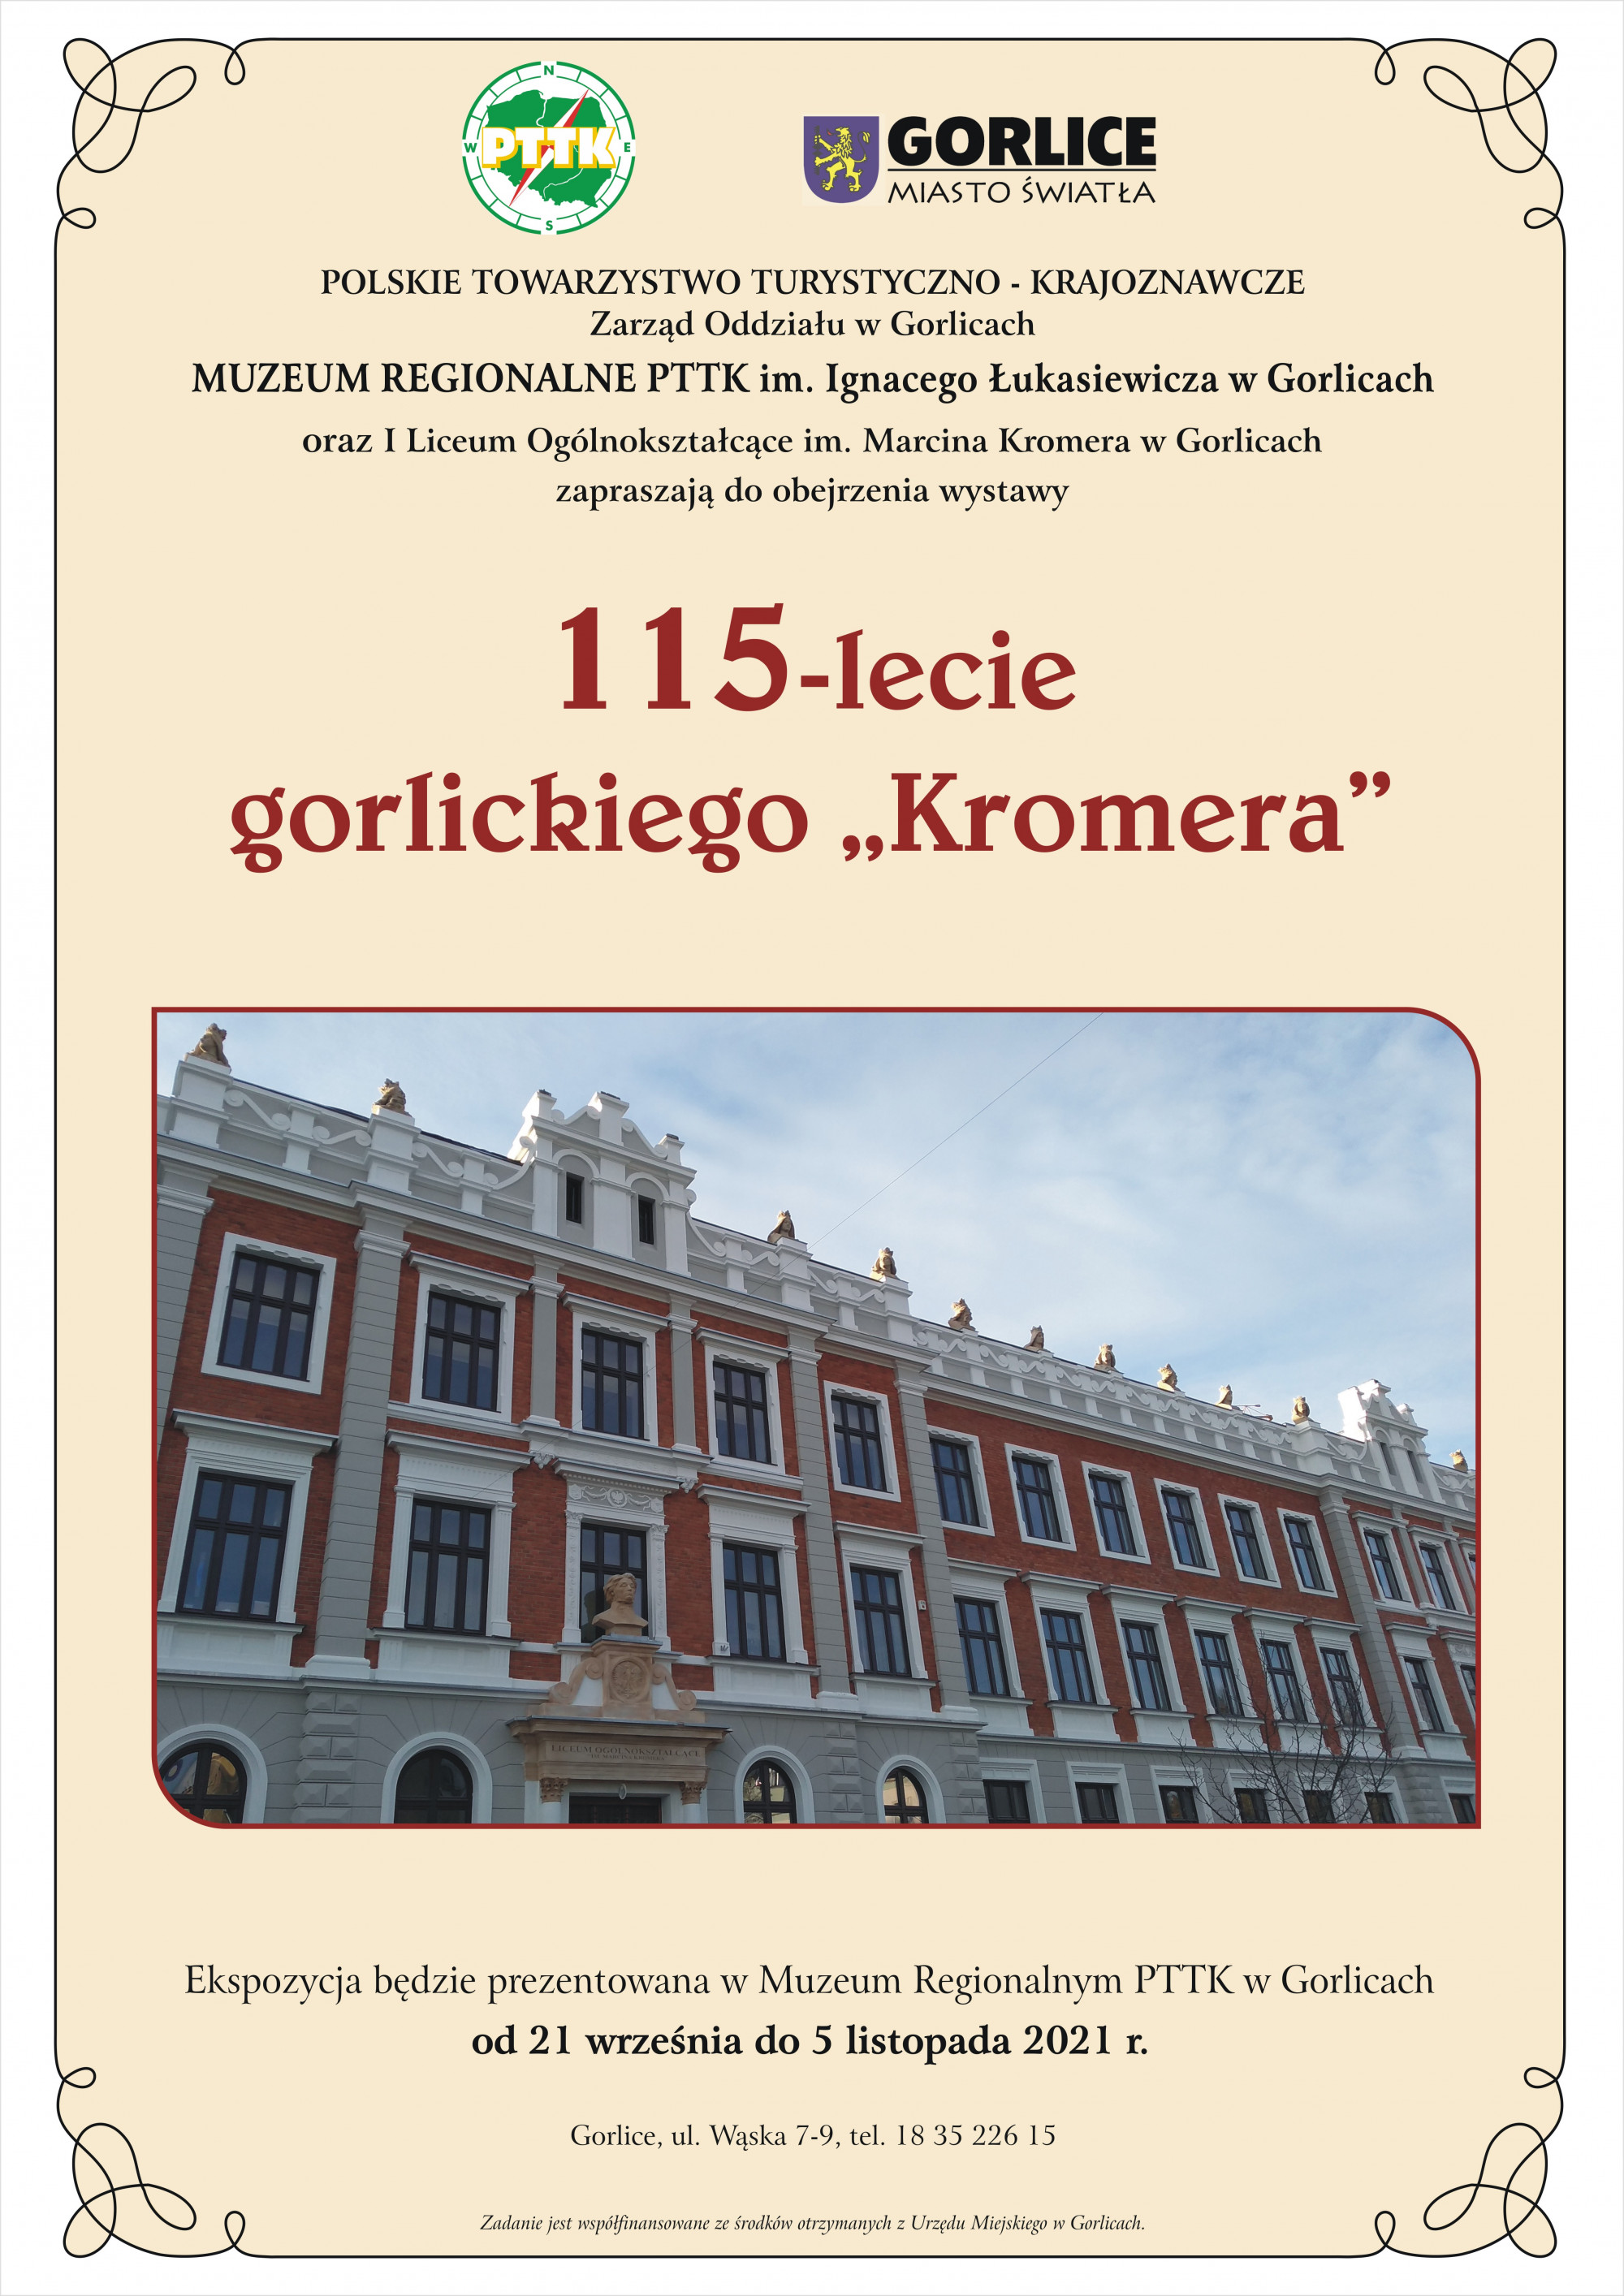 Wernisaż z okazji 115 - lecia gorlickiego Kromera w Muzeum Regionalnym PTTK